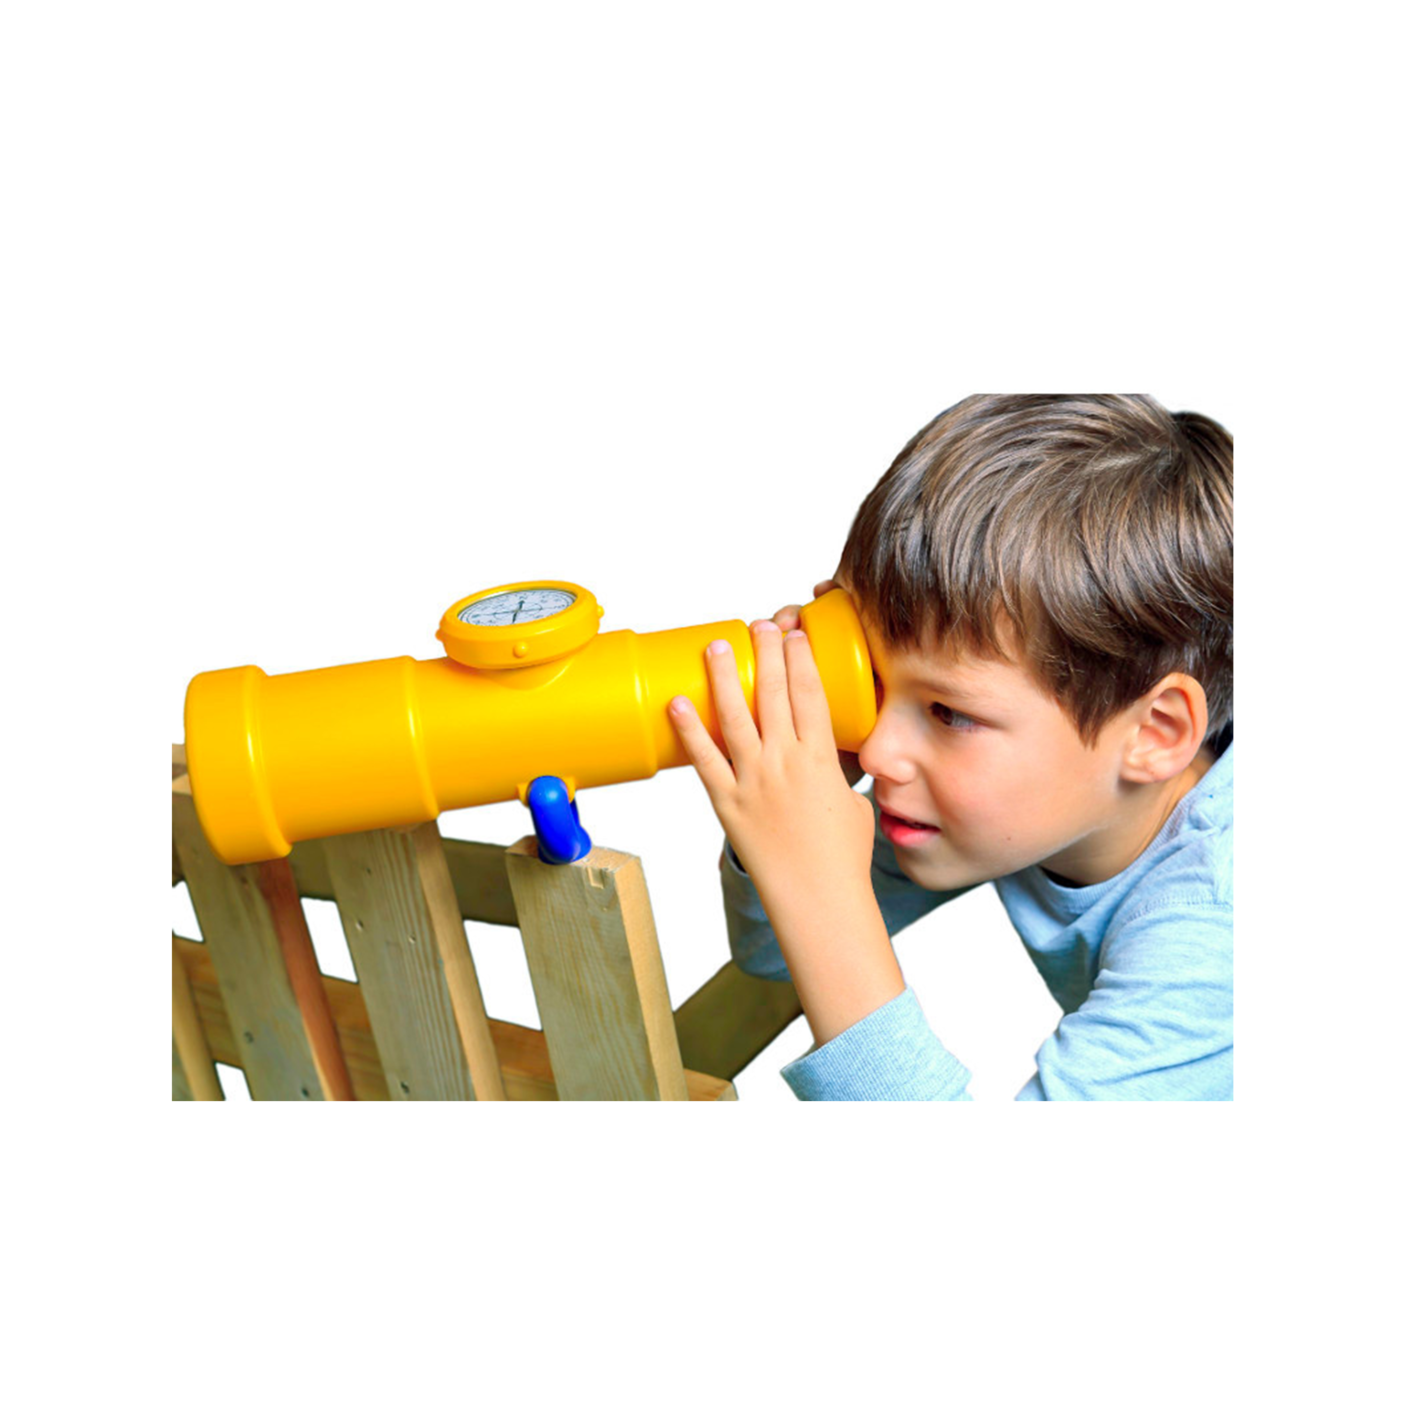 Vaikiškas teleskopas su kompasu (geltonas)